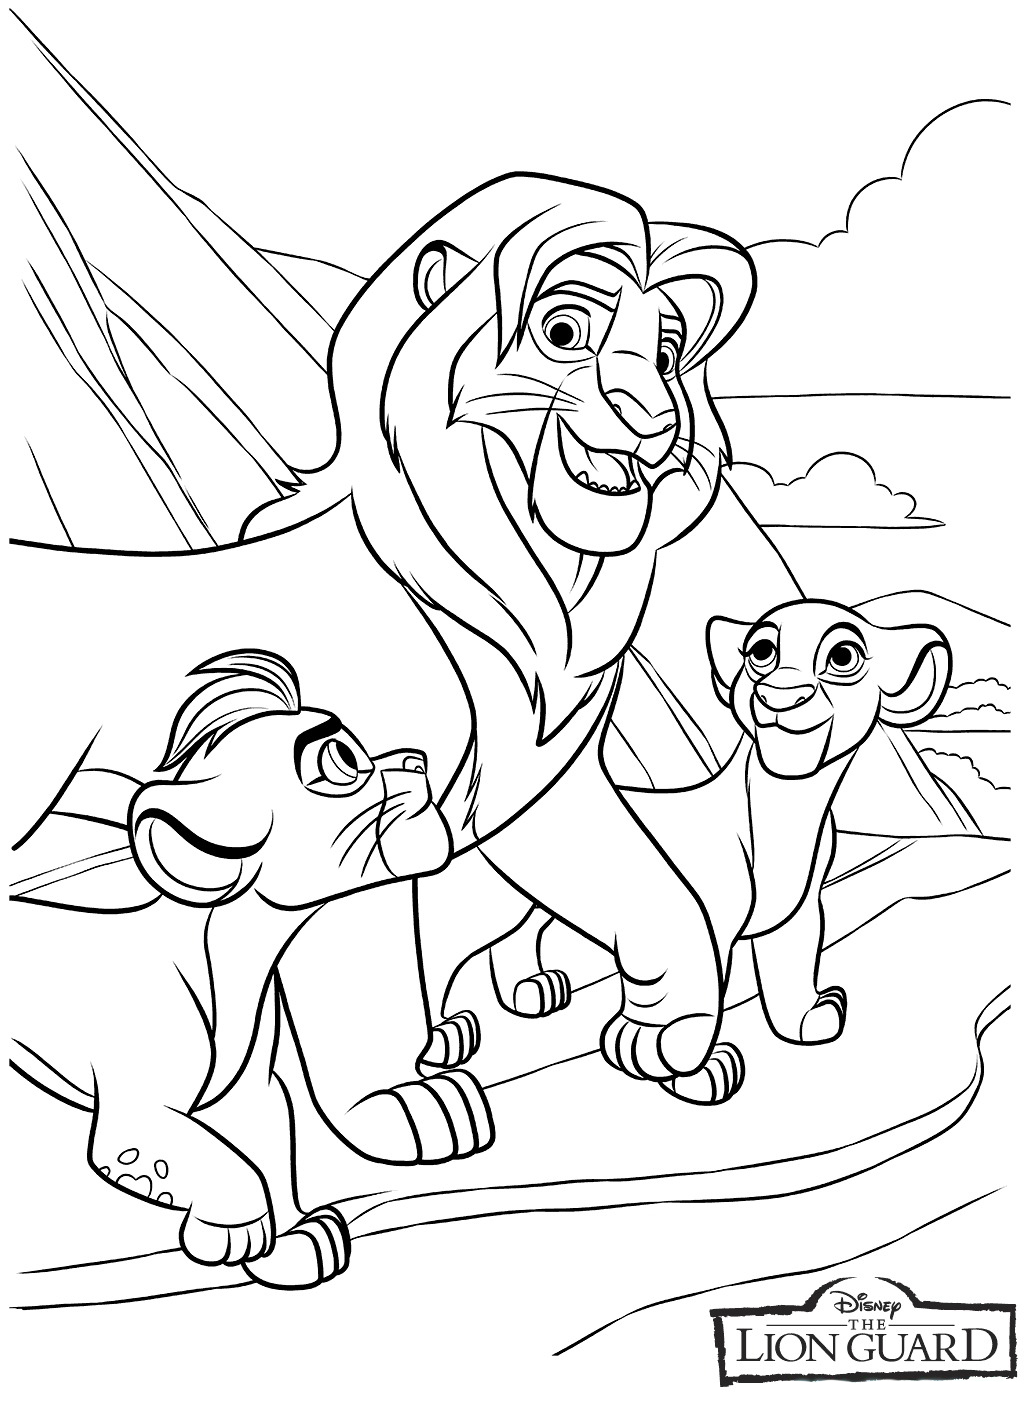 Lion guard coloring pages